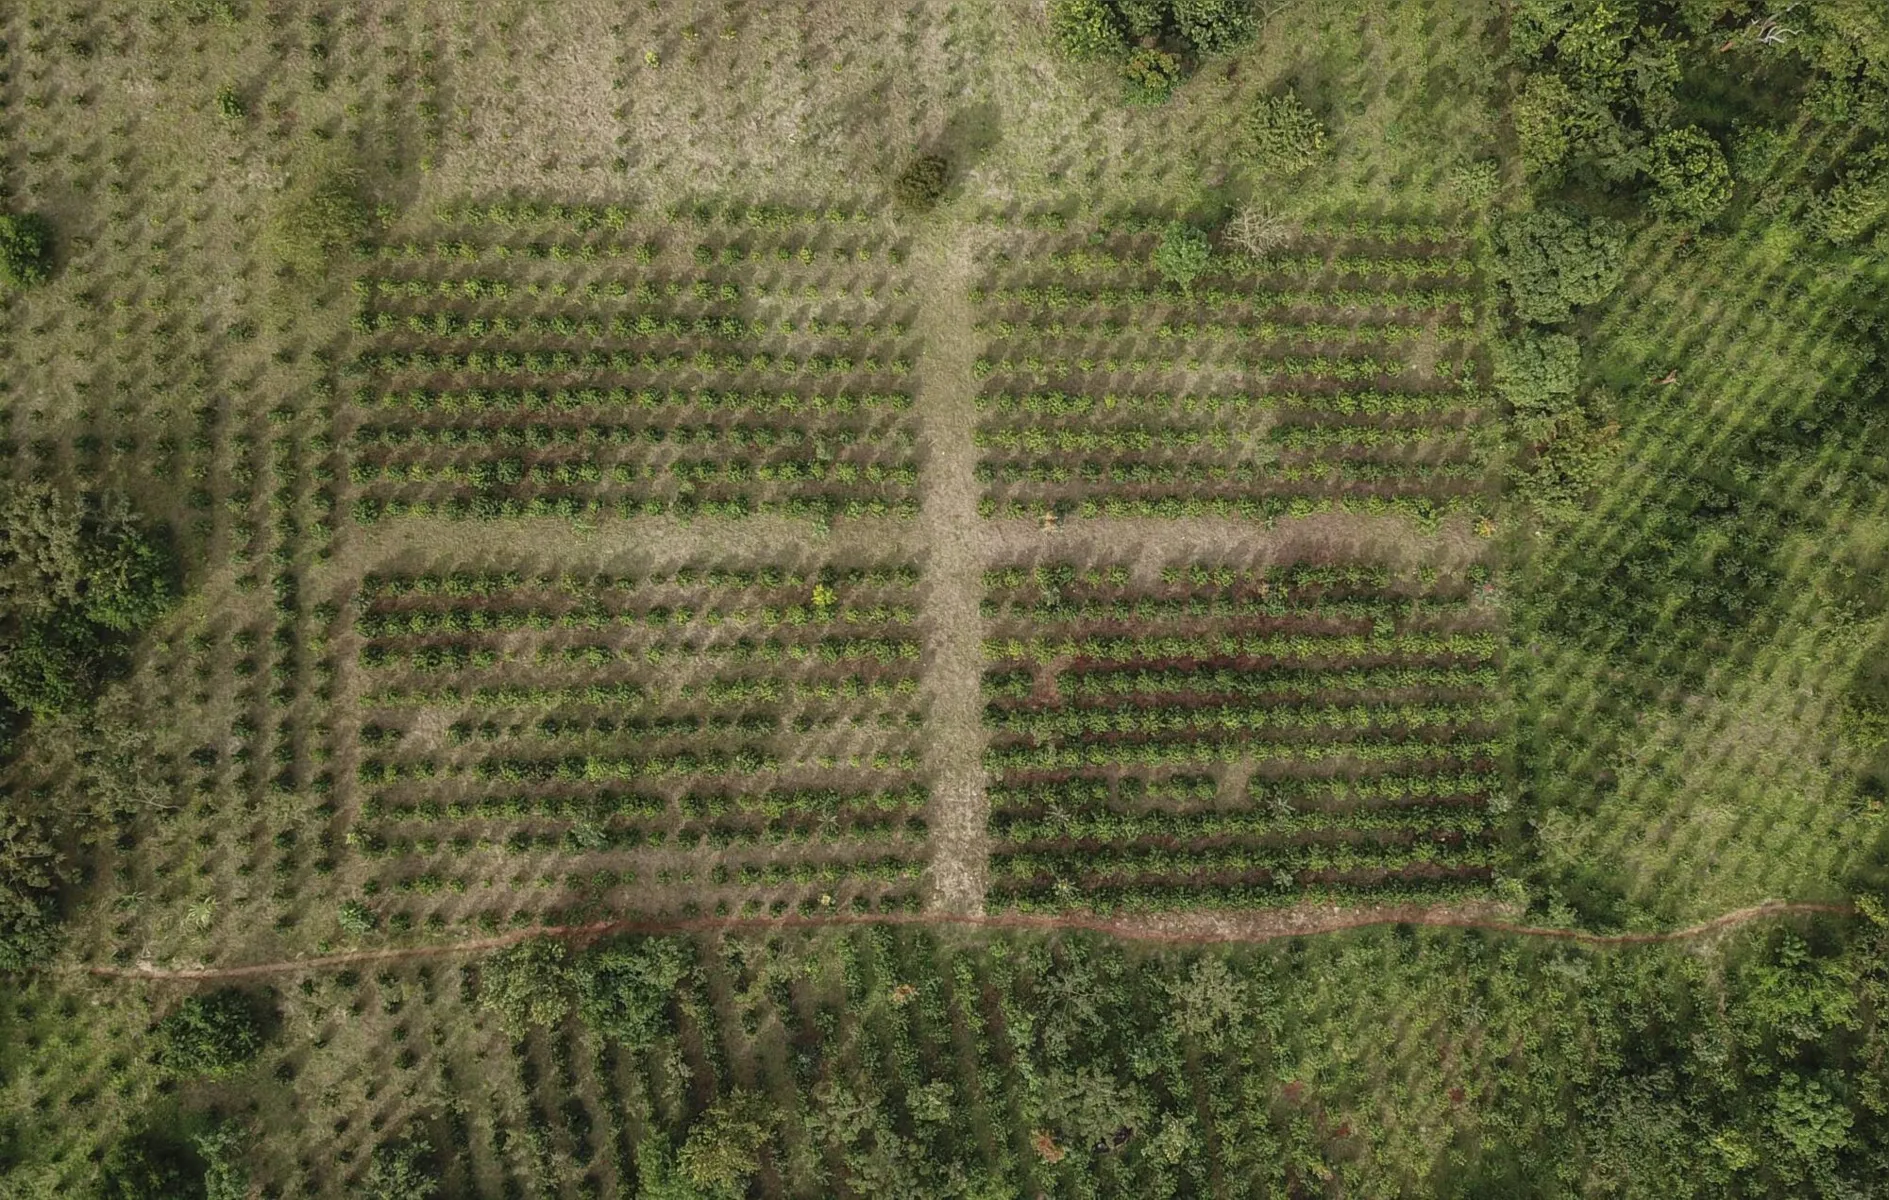 Vista aérea mostra plantações de café na serra da Gorongosa, em 20 de maio de 2022. A floresta devastada voltou a crescer, graças à cultura cafeeira, anteriormente estrangeira